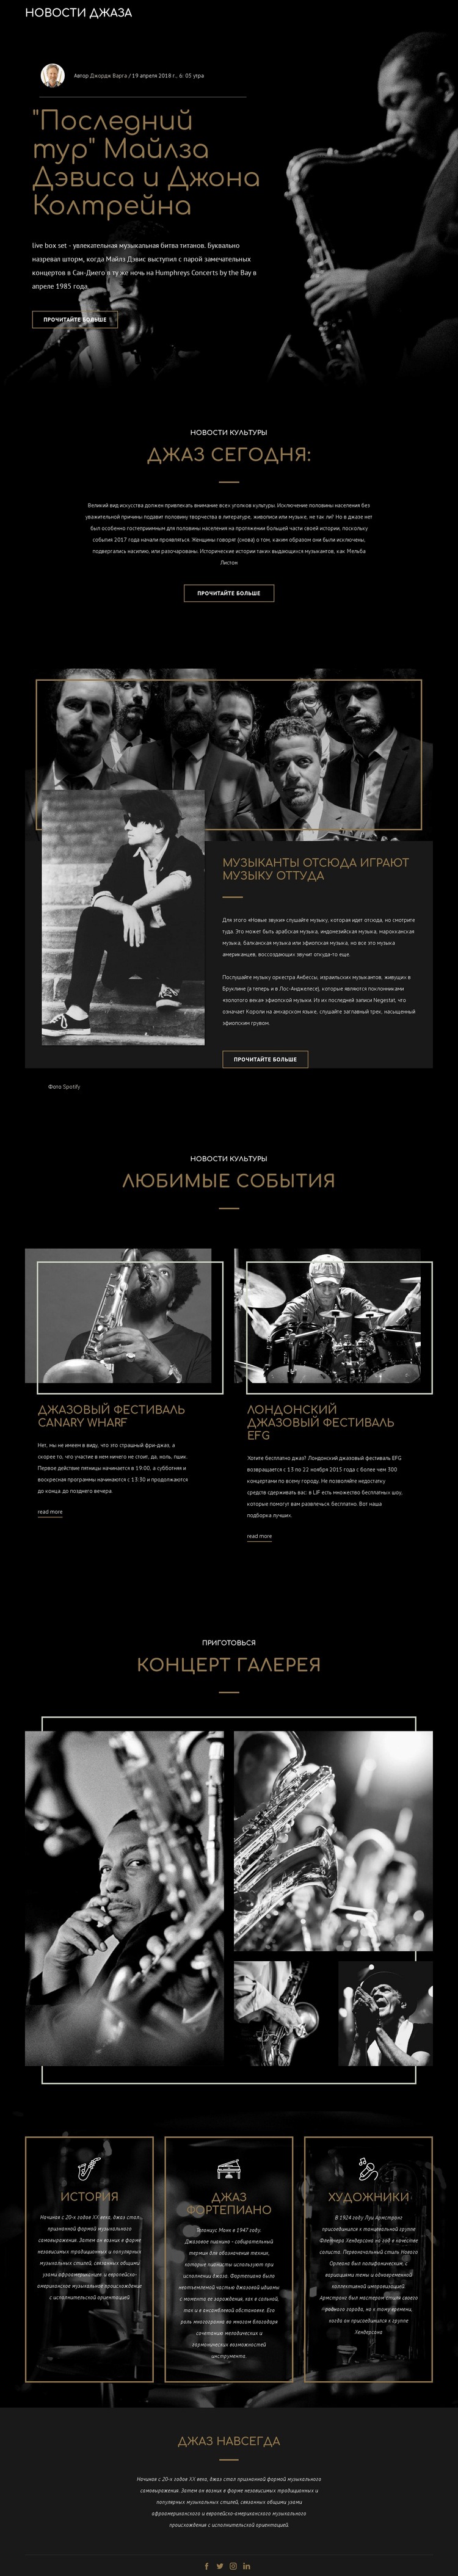 Легенги джазовой музыки Дизайн сайта